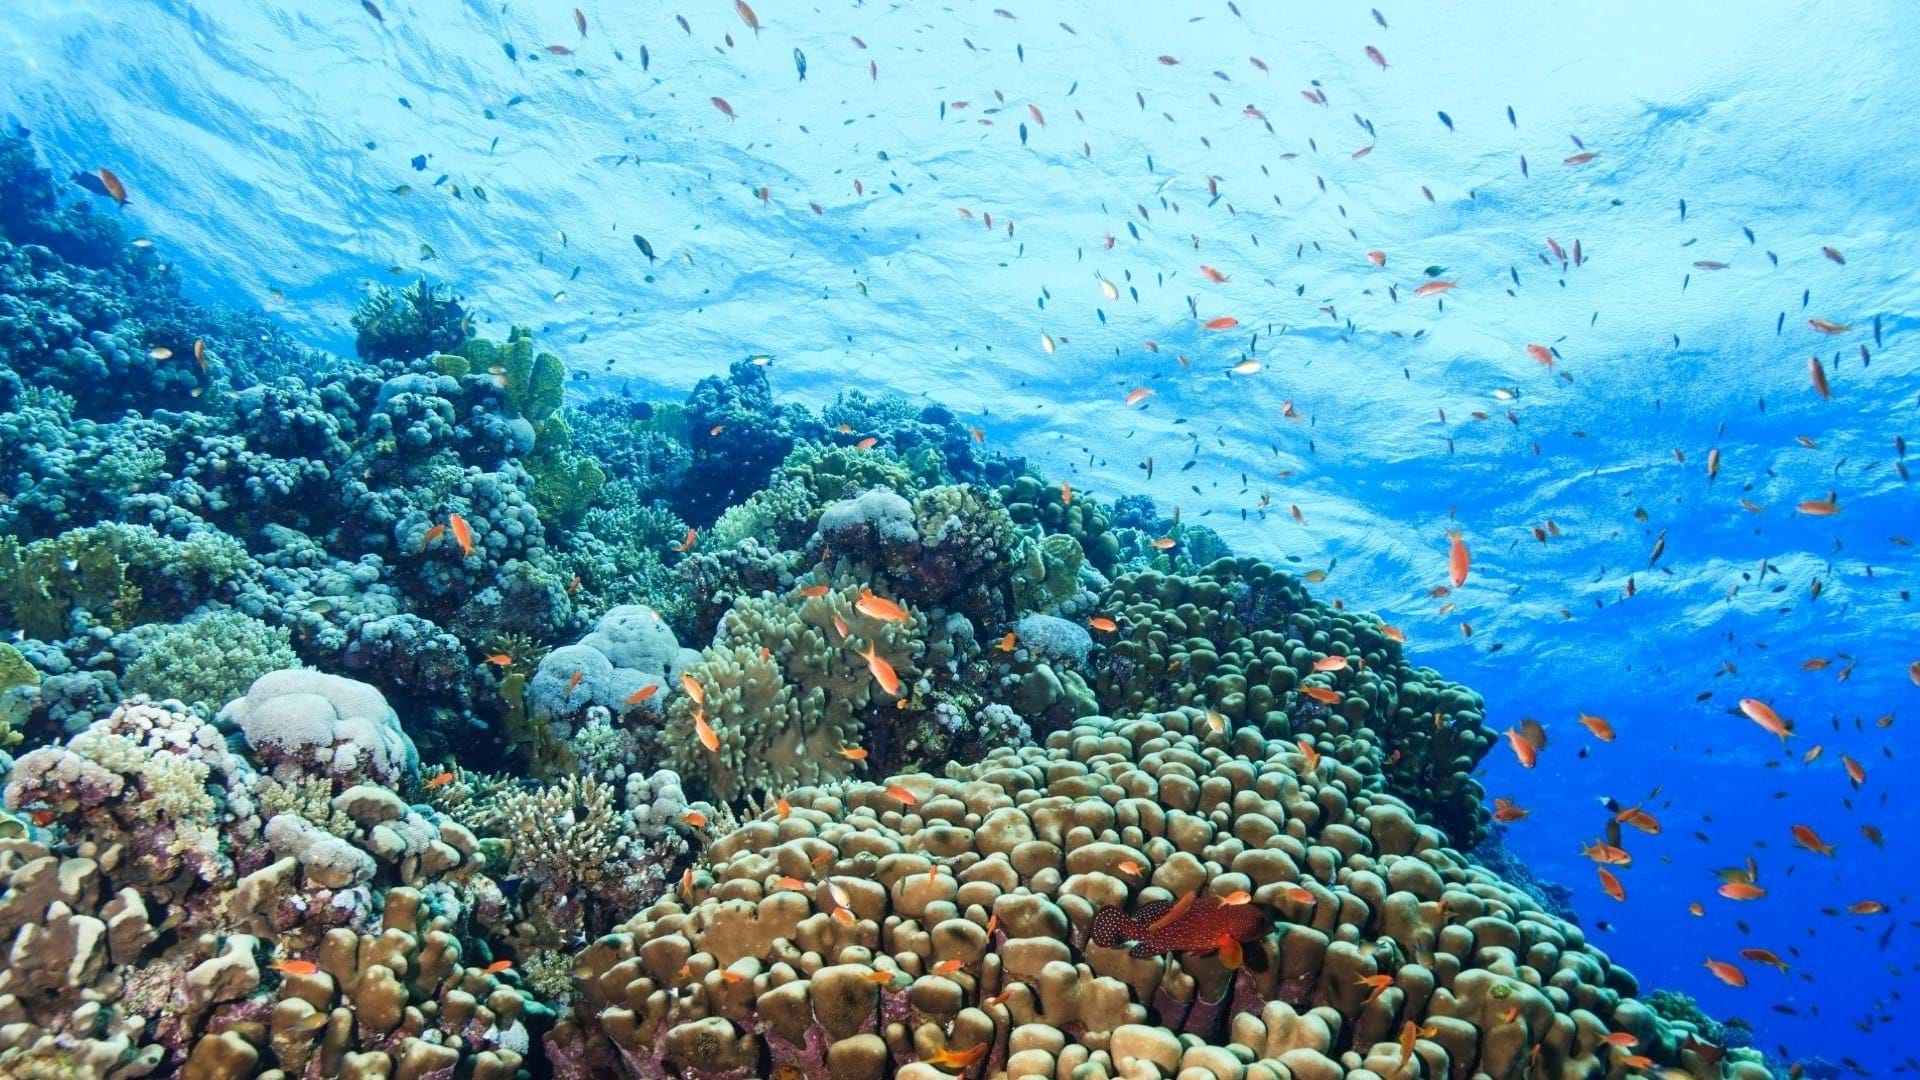 Ronjenje u Hurgadi. Koralni greben i mnoštvo ribica koje plivaju oko grebena raznih boja.